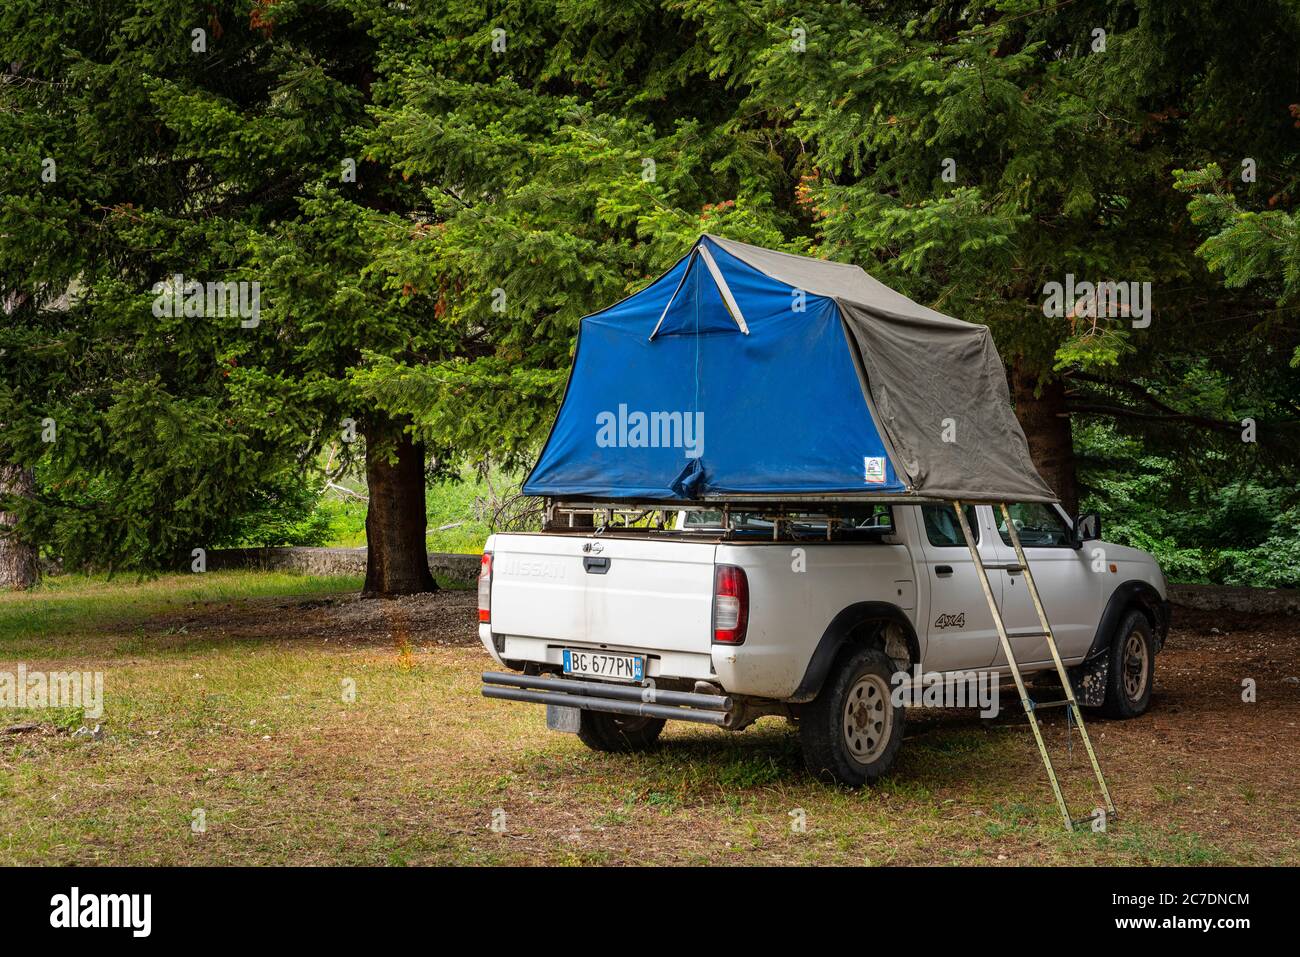 Auto-Camping-Zelt auf dem Dach eines Nissan SUV in den Bergen  Stockfotografie - Alamy